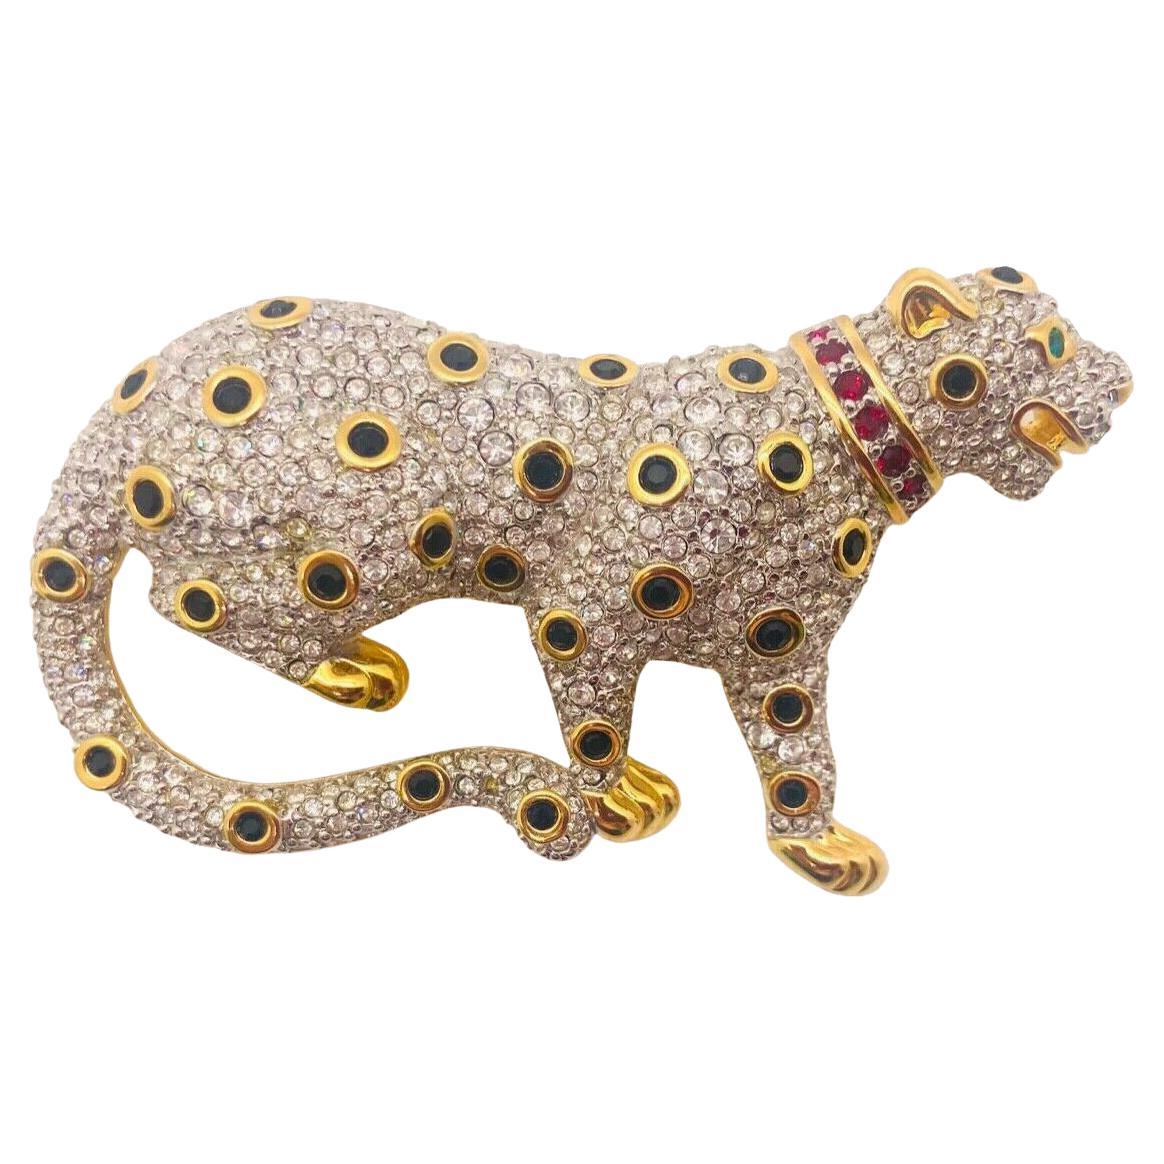 Swarovski Pave' Kristall Gold Leopardenbrosche oder Anstecknadel, signiert und freitragend